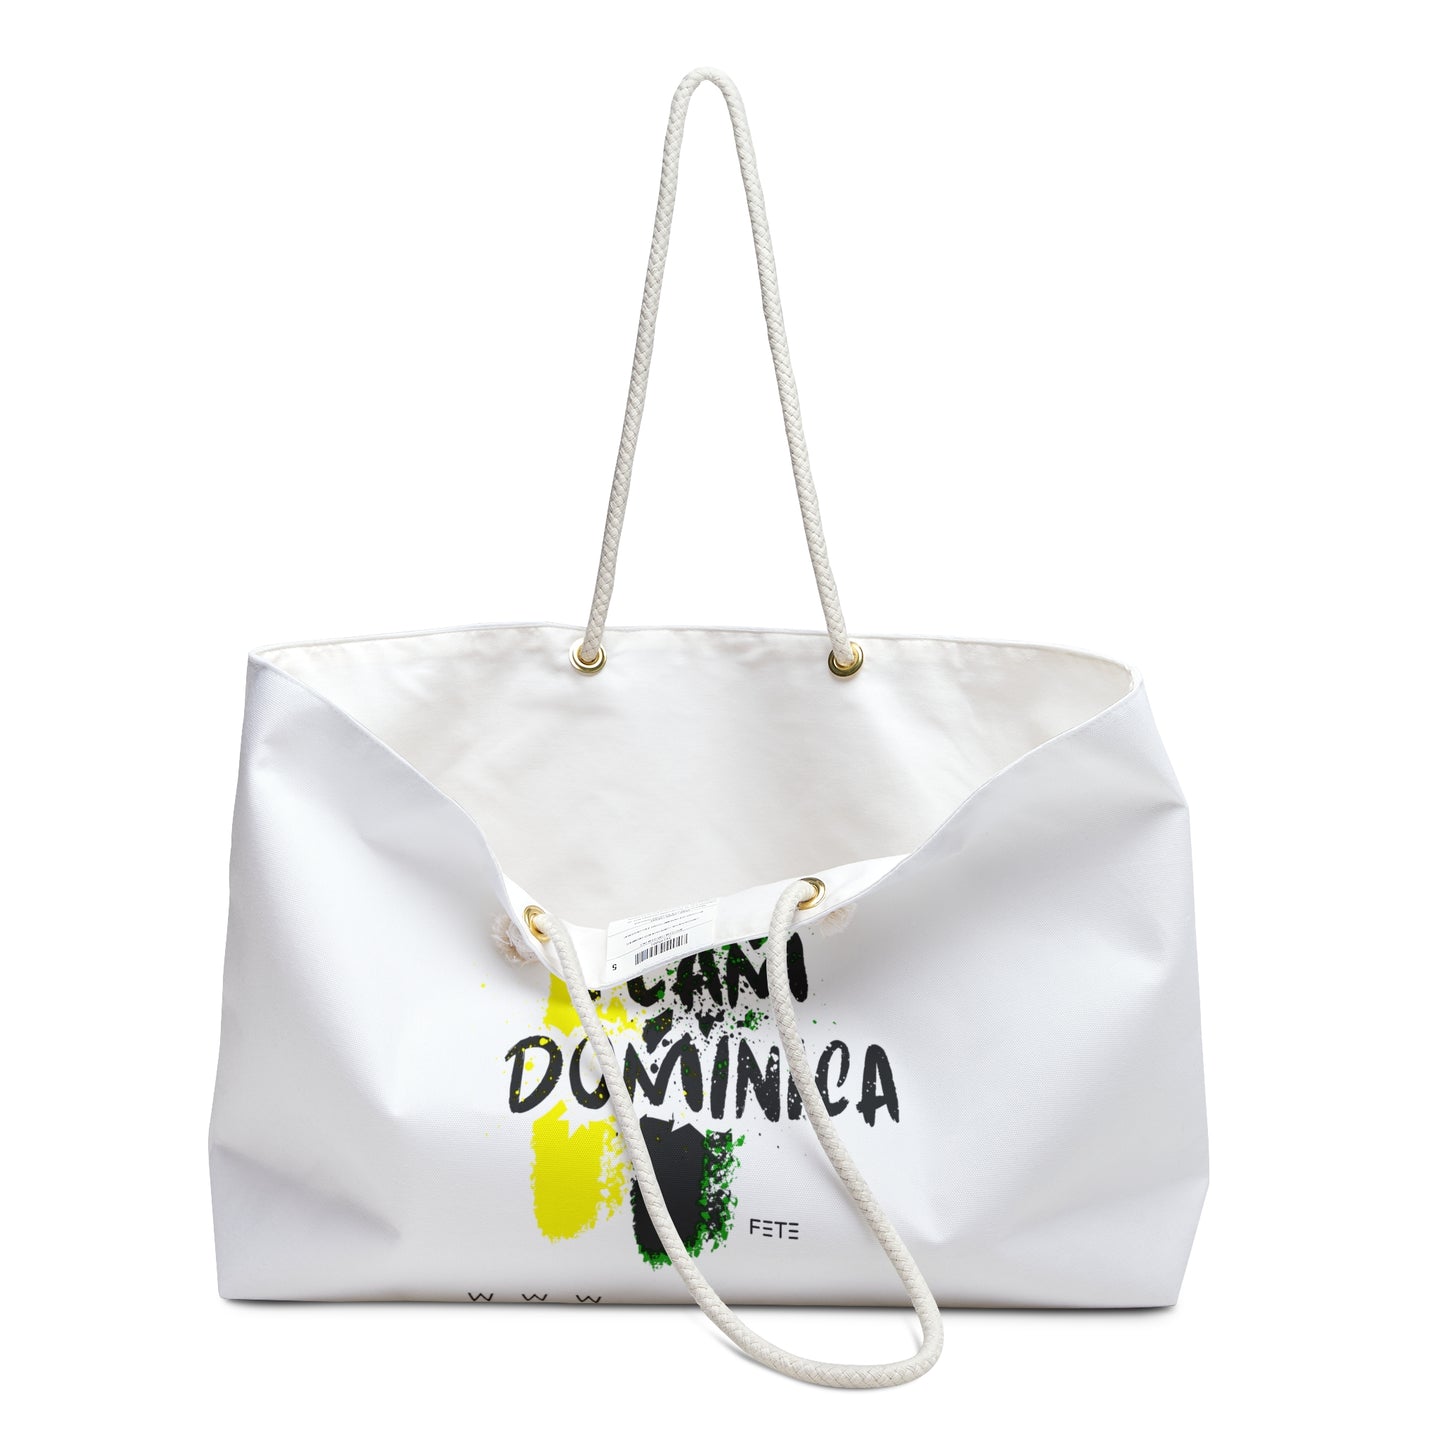 Team Dominica Weekender Bag